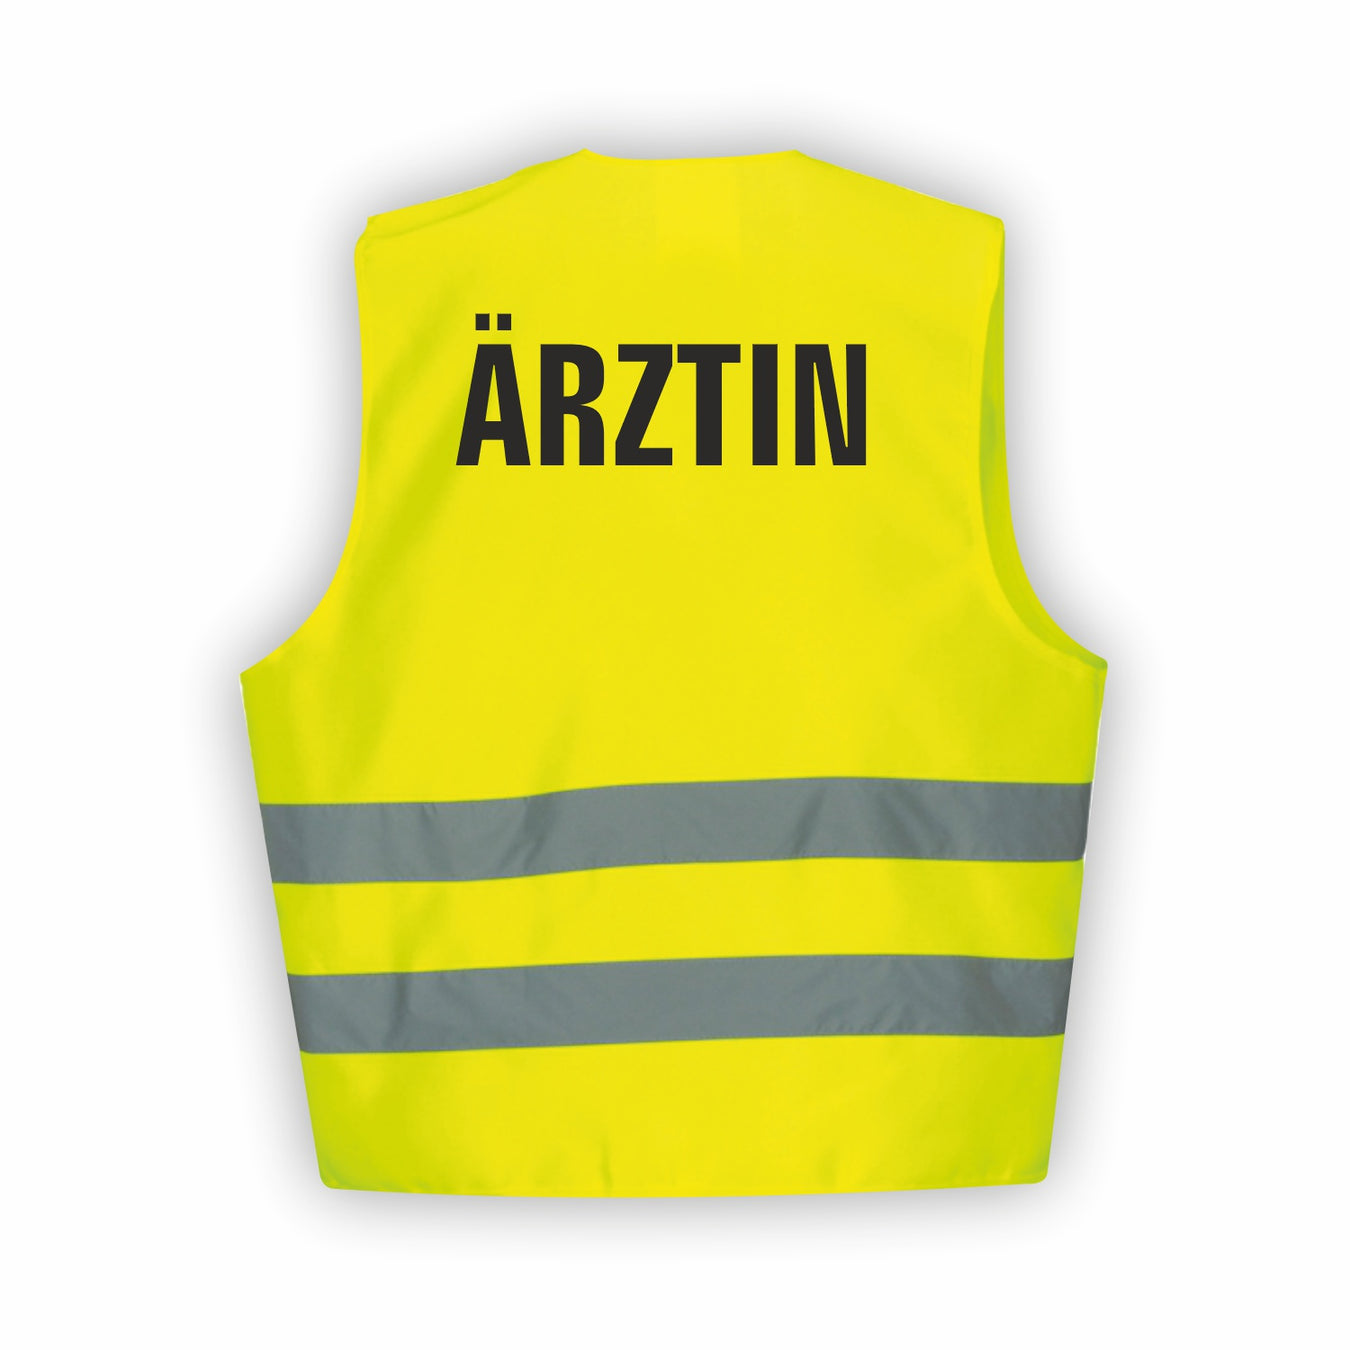 NOTARZT | ARZT Warnwesten & Winterjacken - Sicherheitskleidung